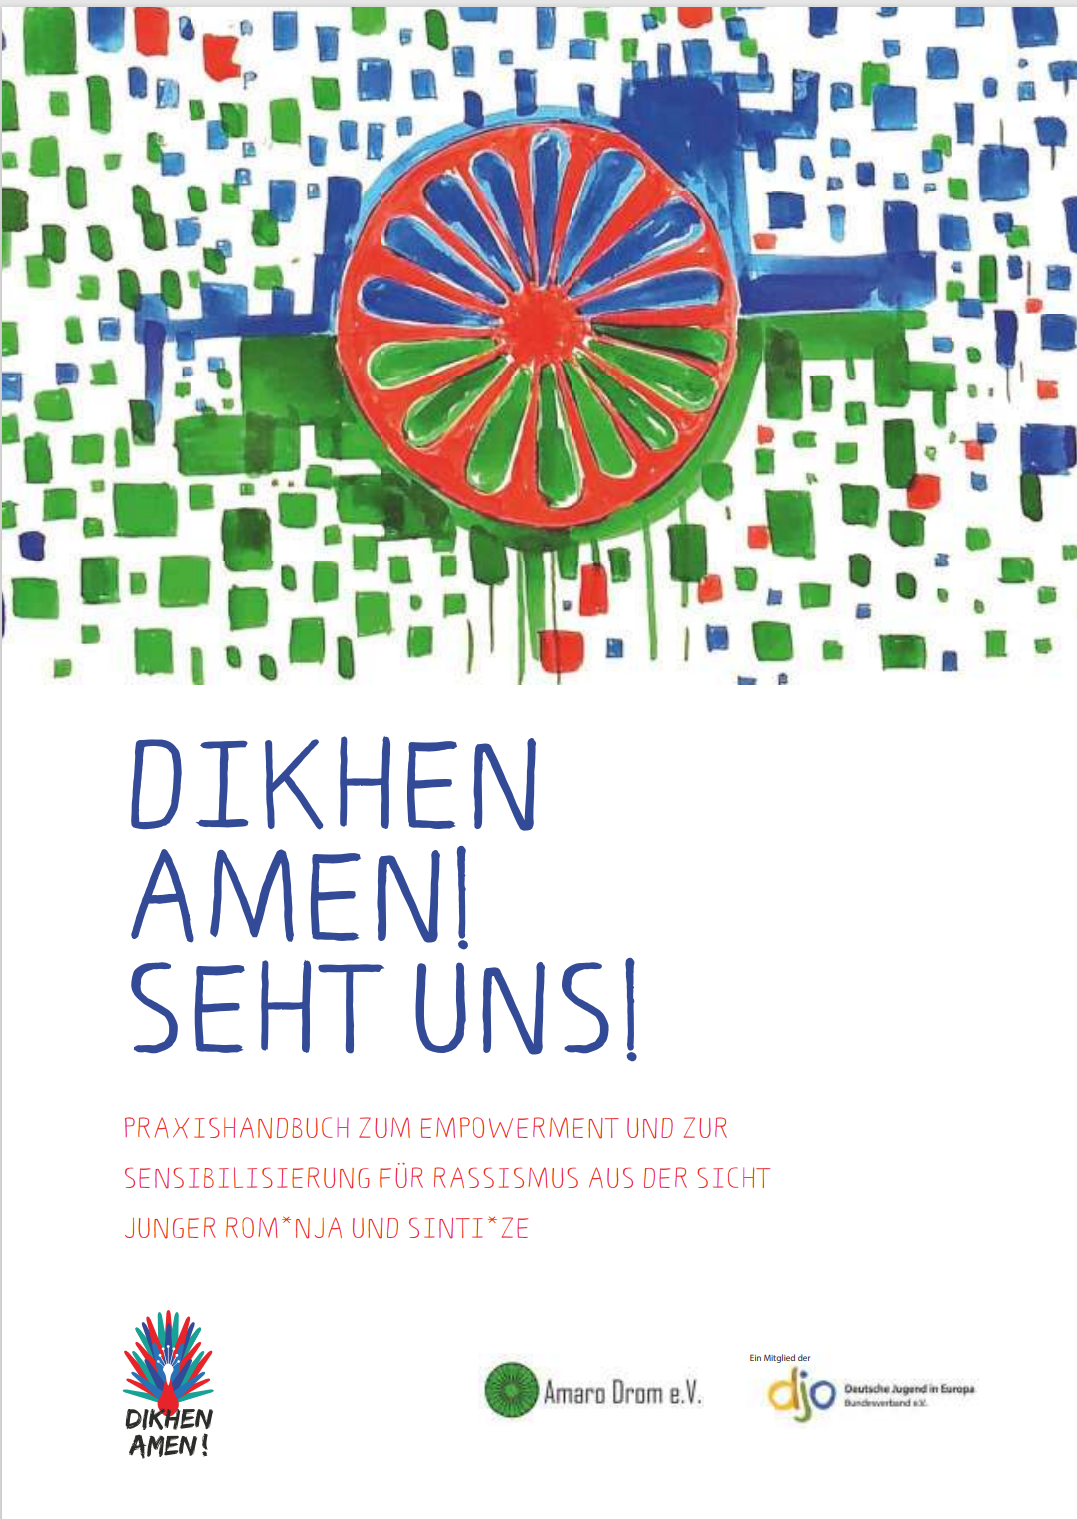 Cover des Praxishandbuchs "Dikhen amen!", auf der oberen Hälfte eine Zeichnung mit einem roten Rad in der Mitte, dahinter blaue und grüne quadratische Kästchen